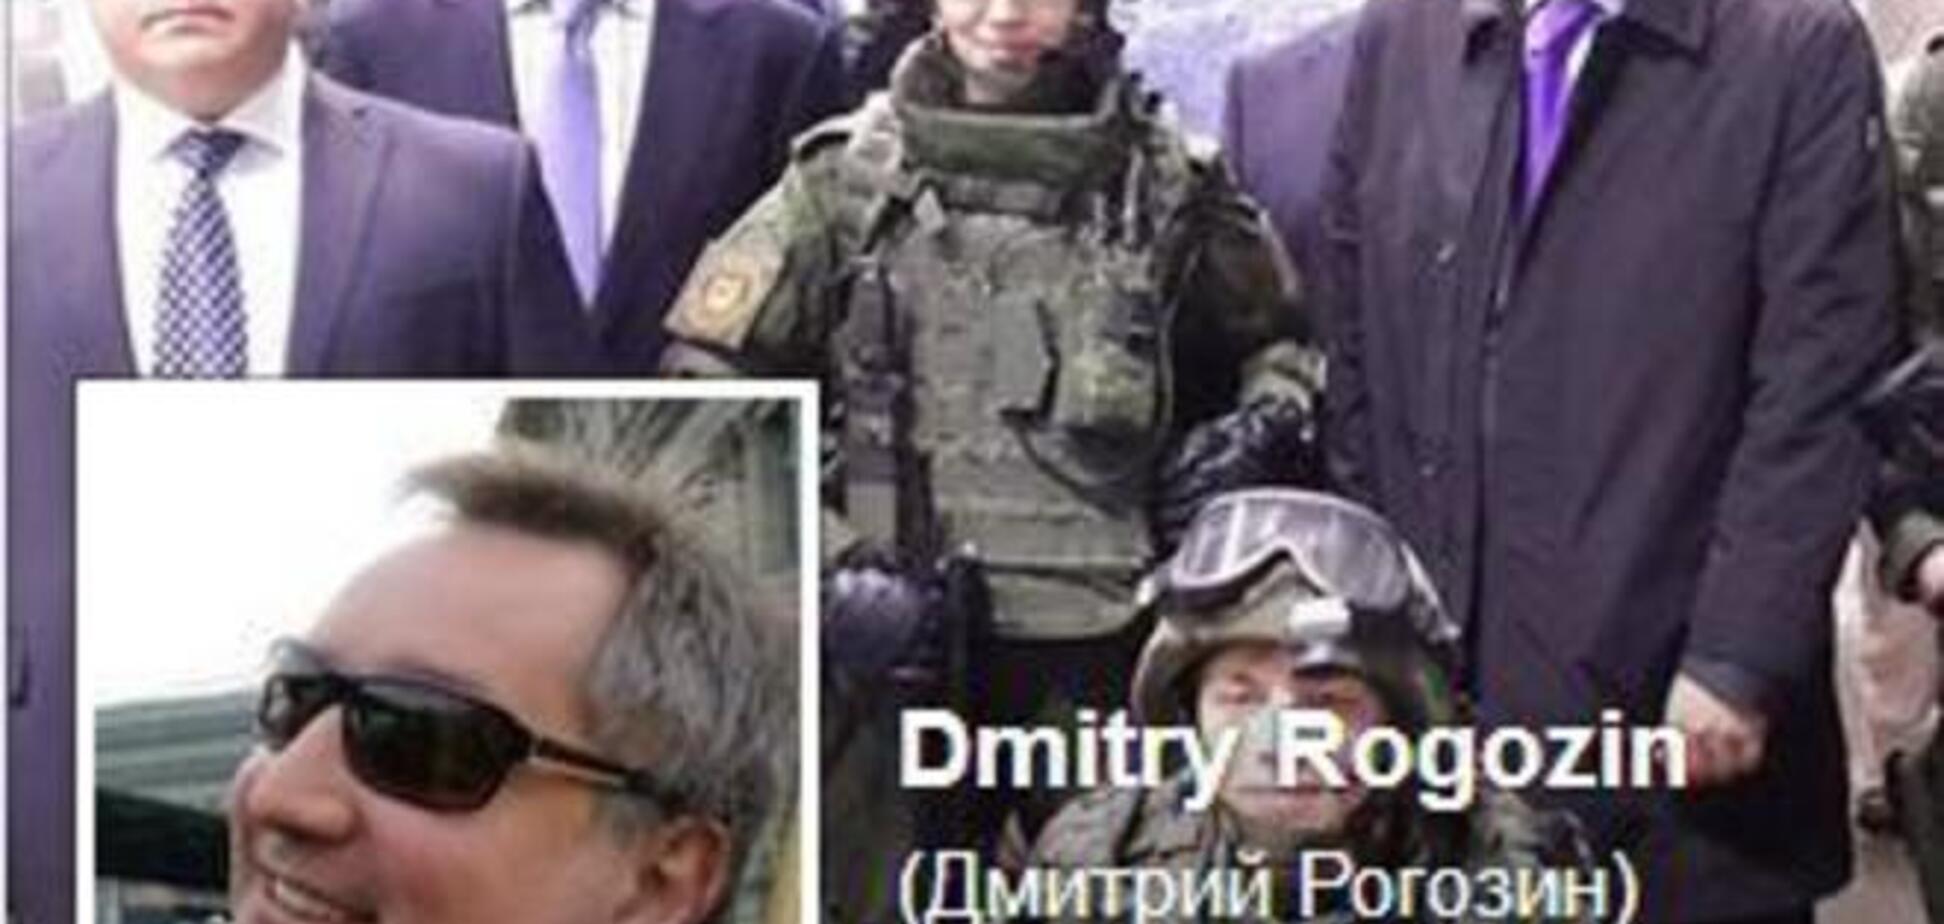 Рогозин назвал своих союзников в украинской власти